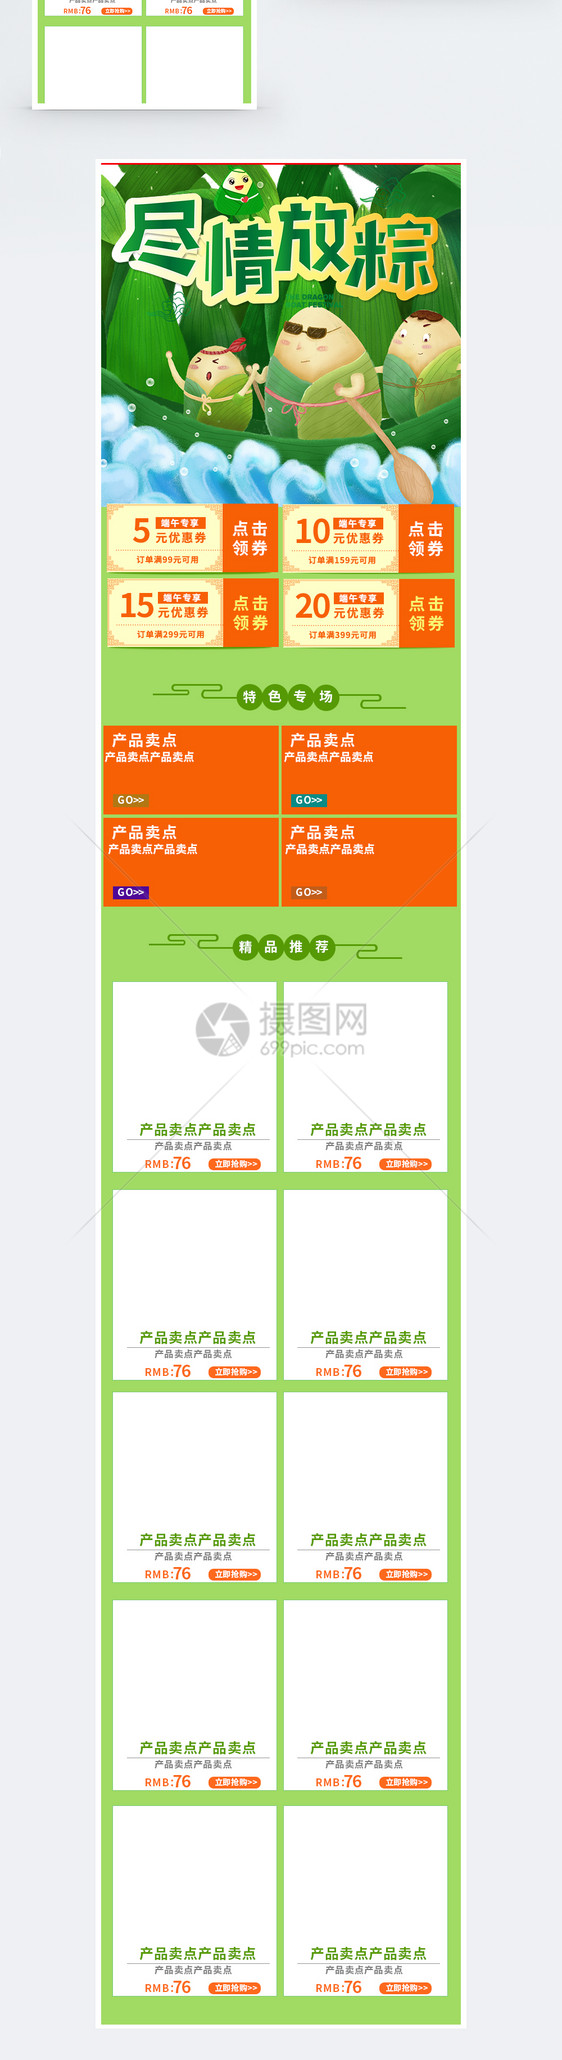 尽情放粽端午节促销淘宝手机端模板图片